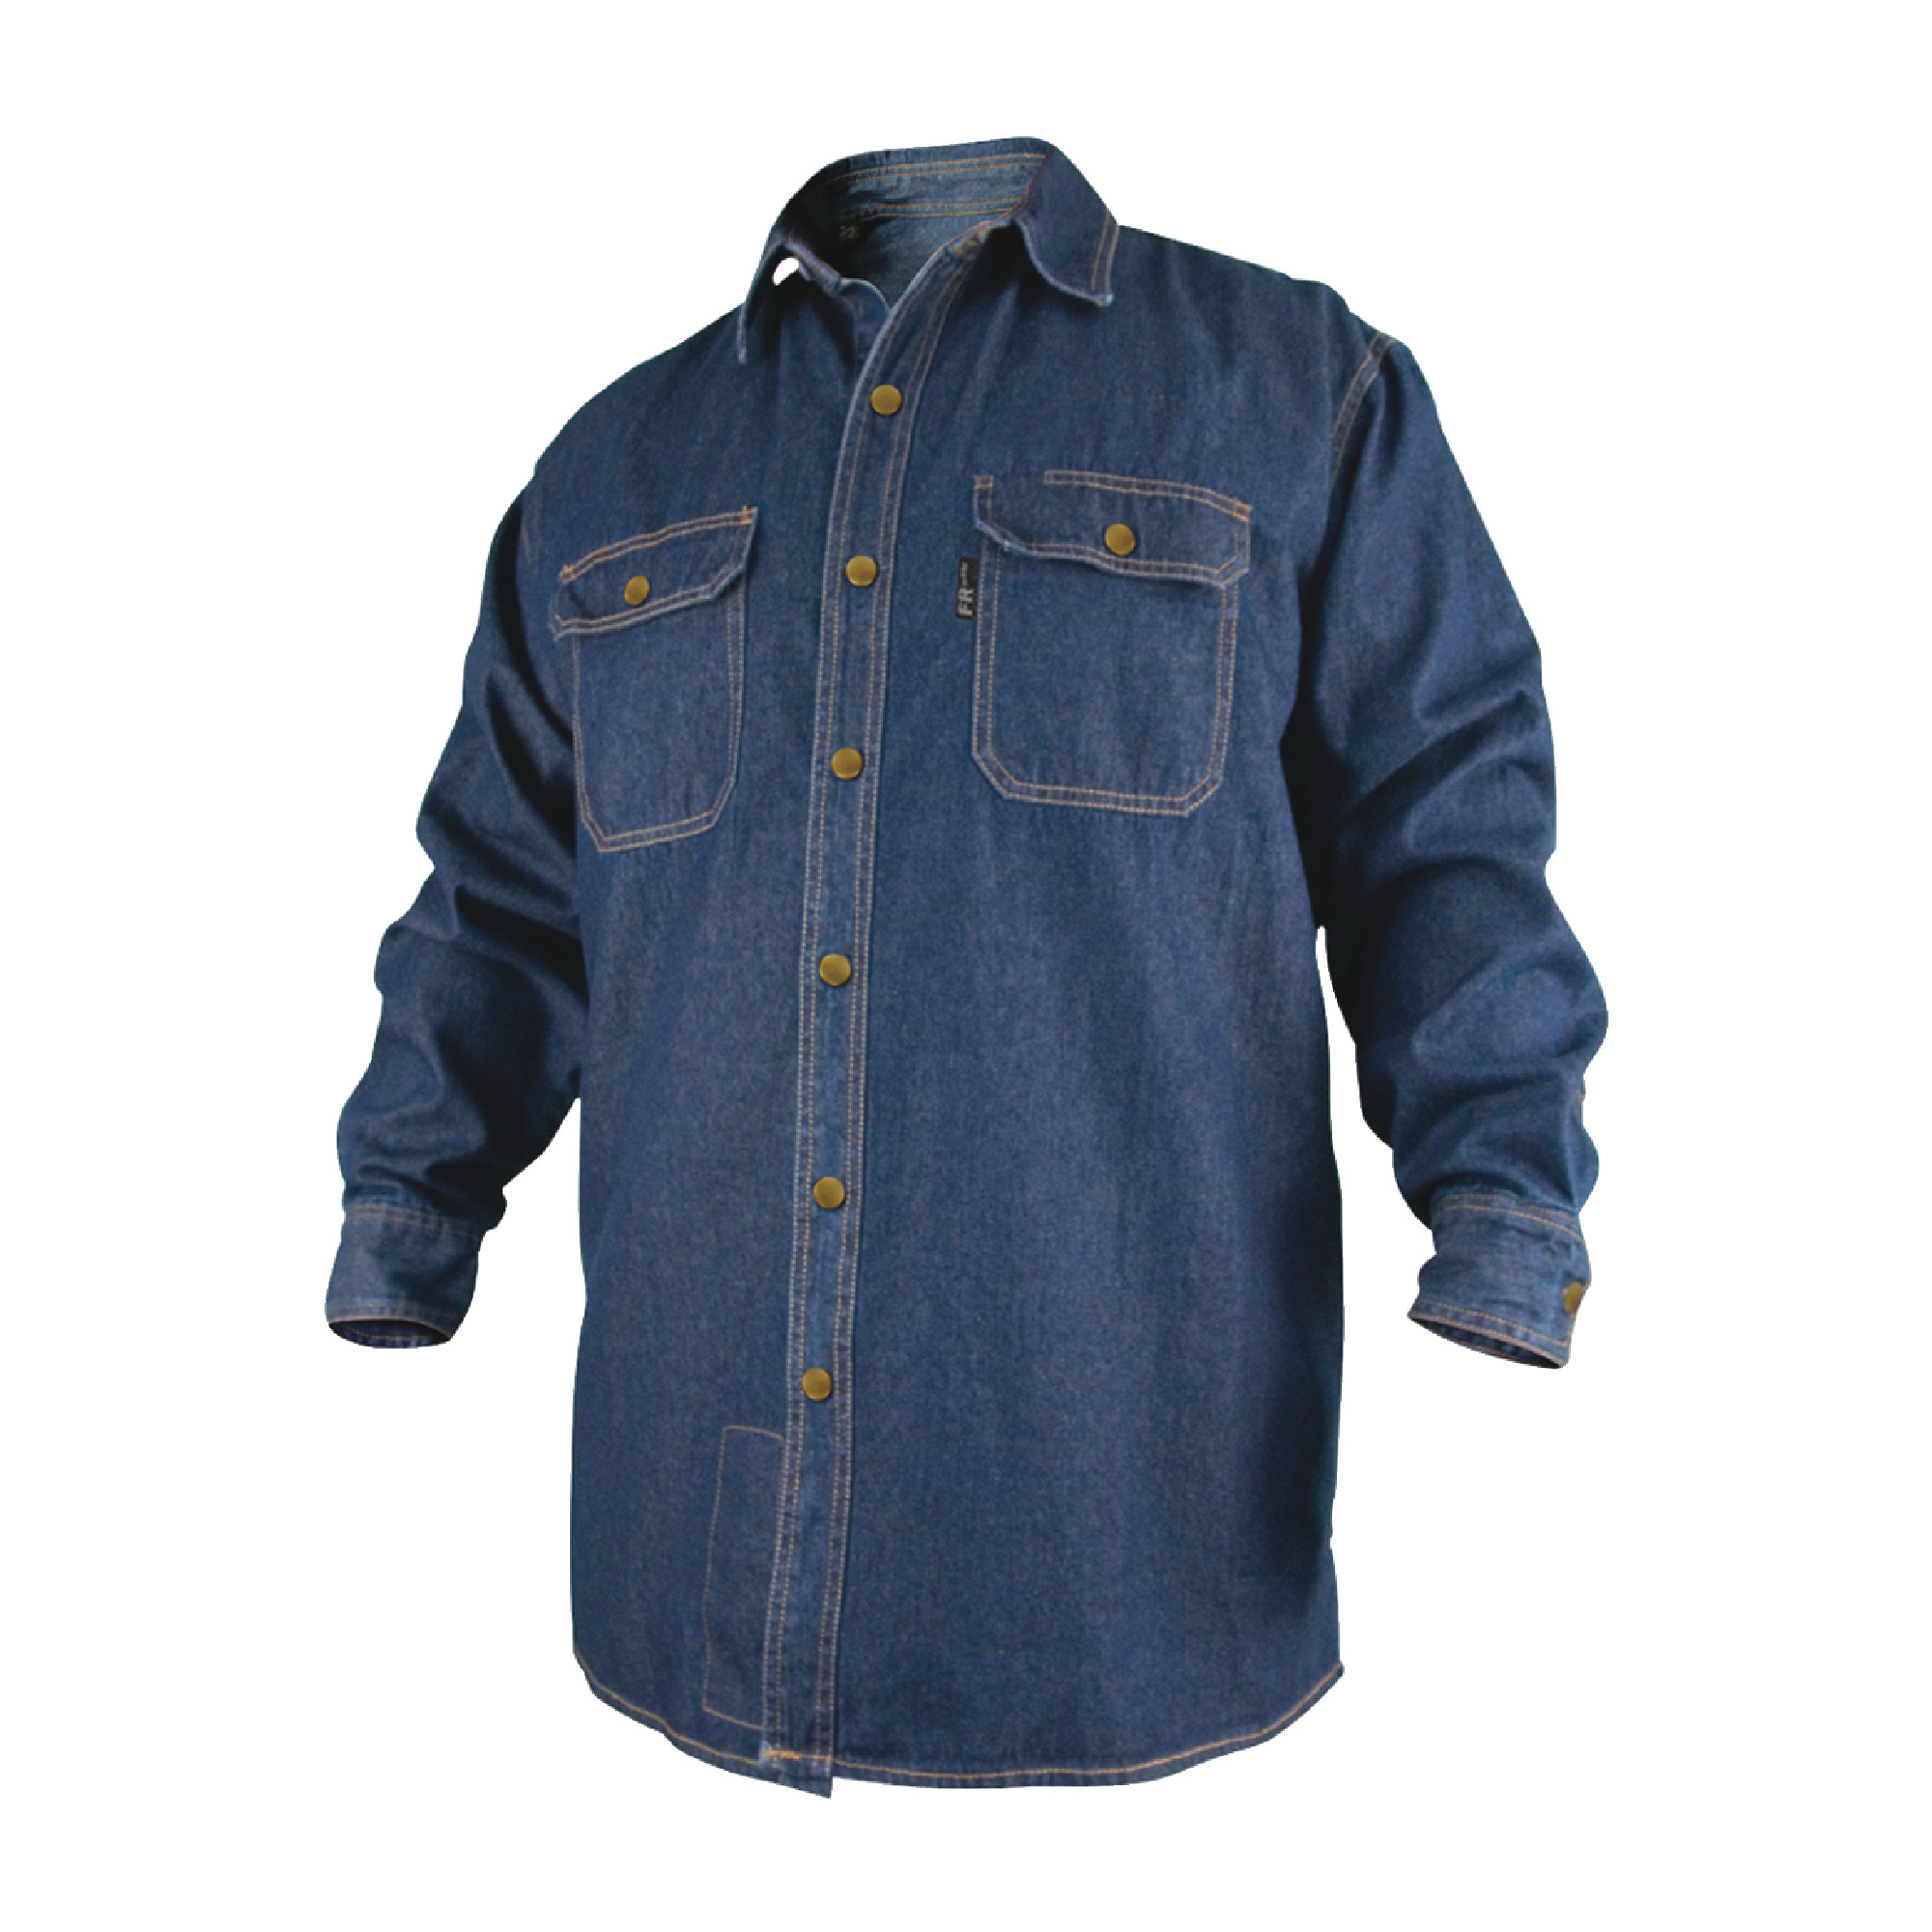 Black Stallion Denim Fire Resistant Cotton Welding Shirt - Size L